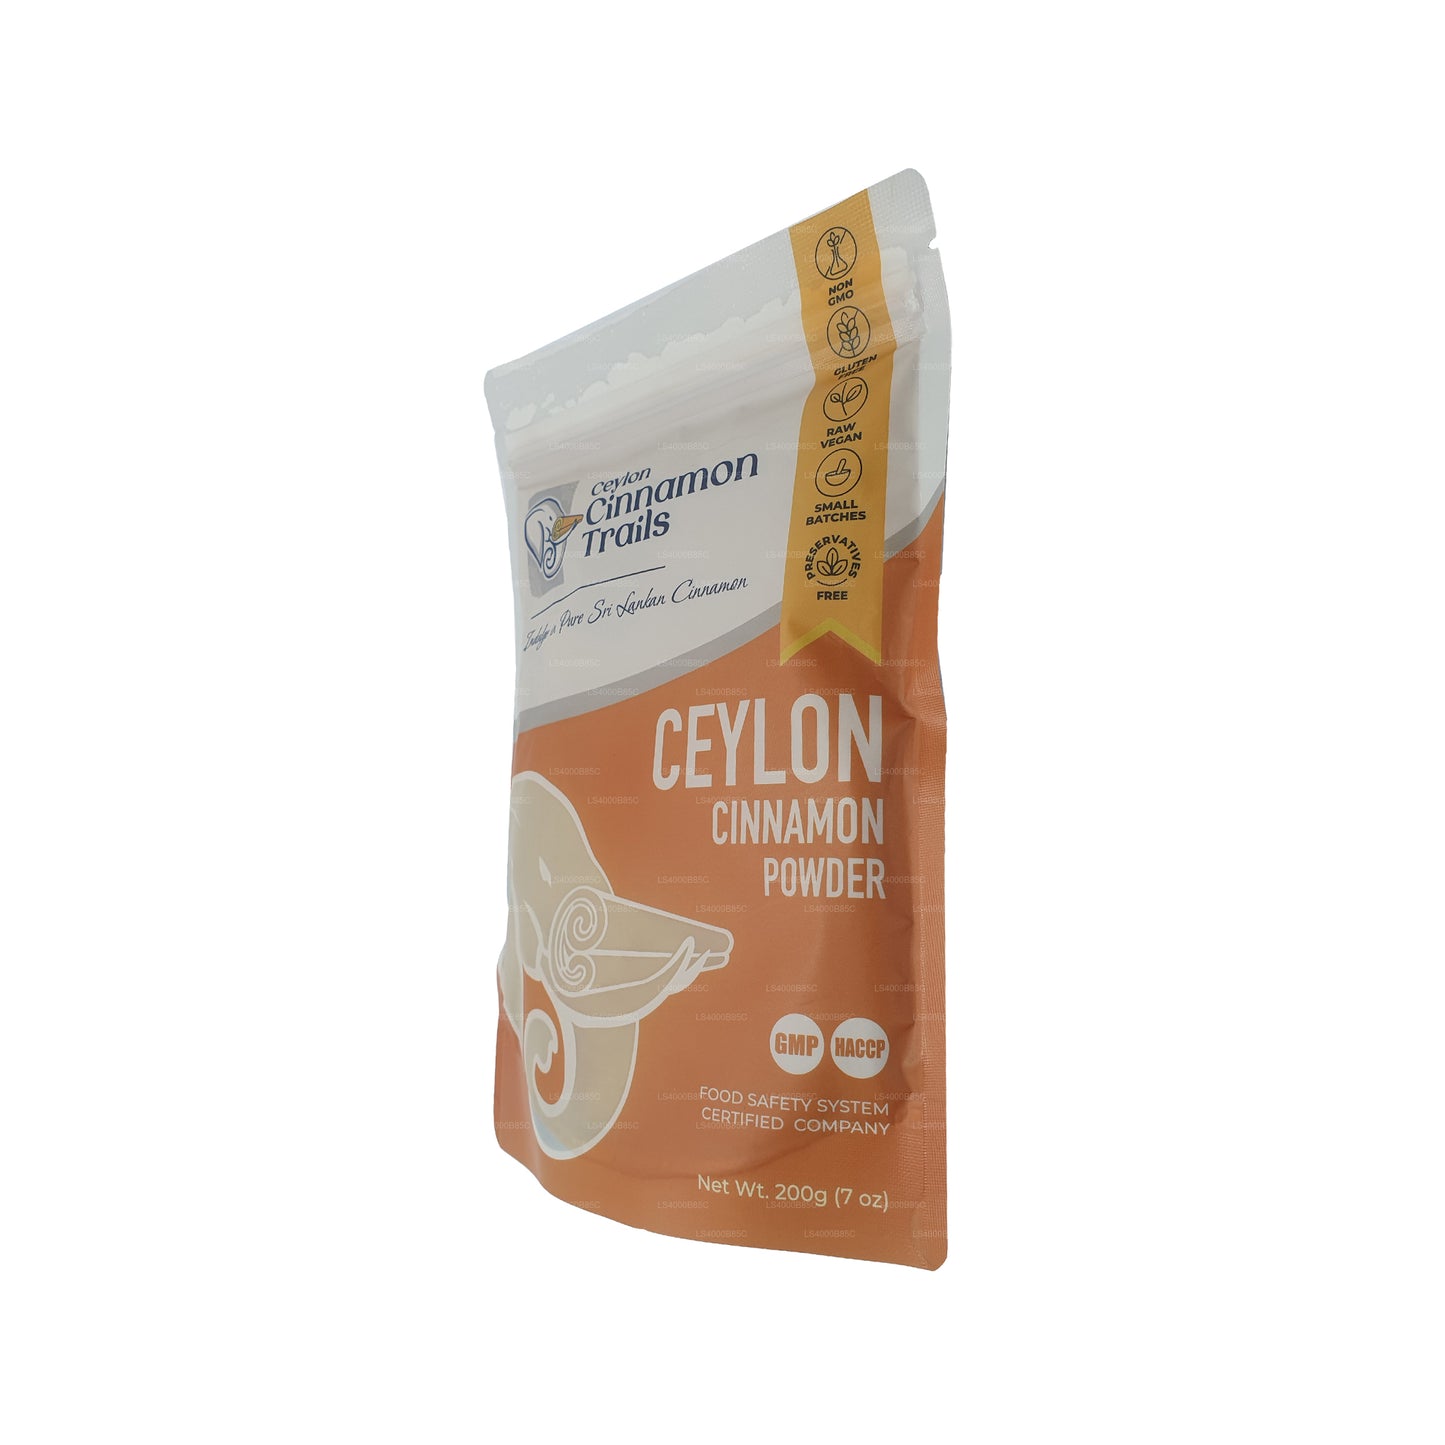 Ceylon Cinnamon Trails Cinnamon Powder (200g)